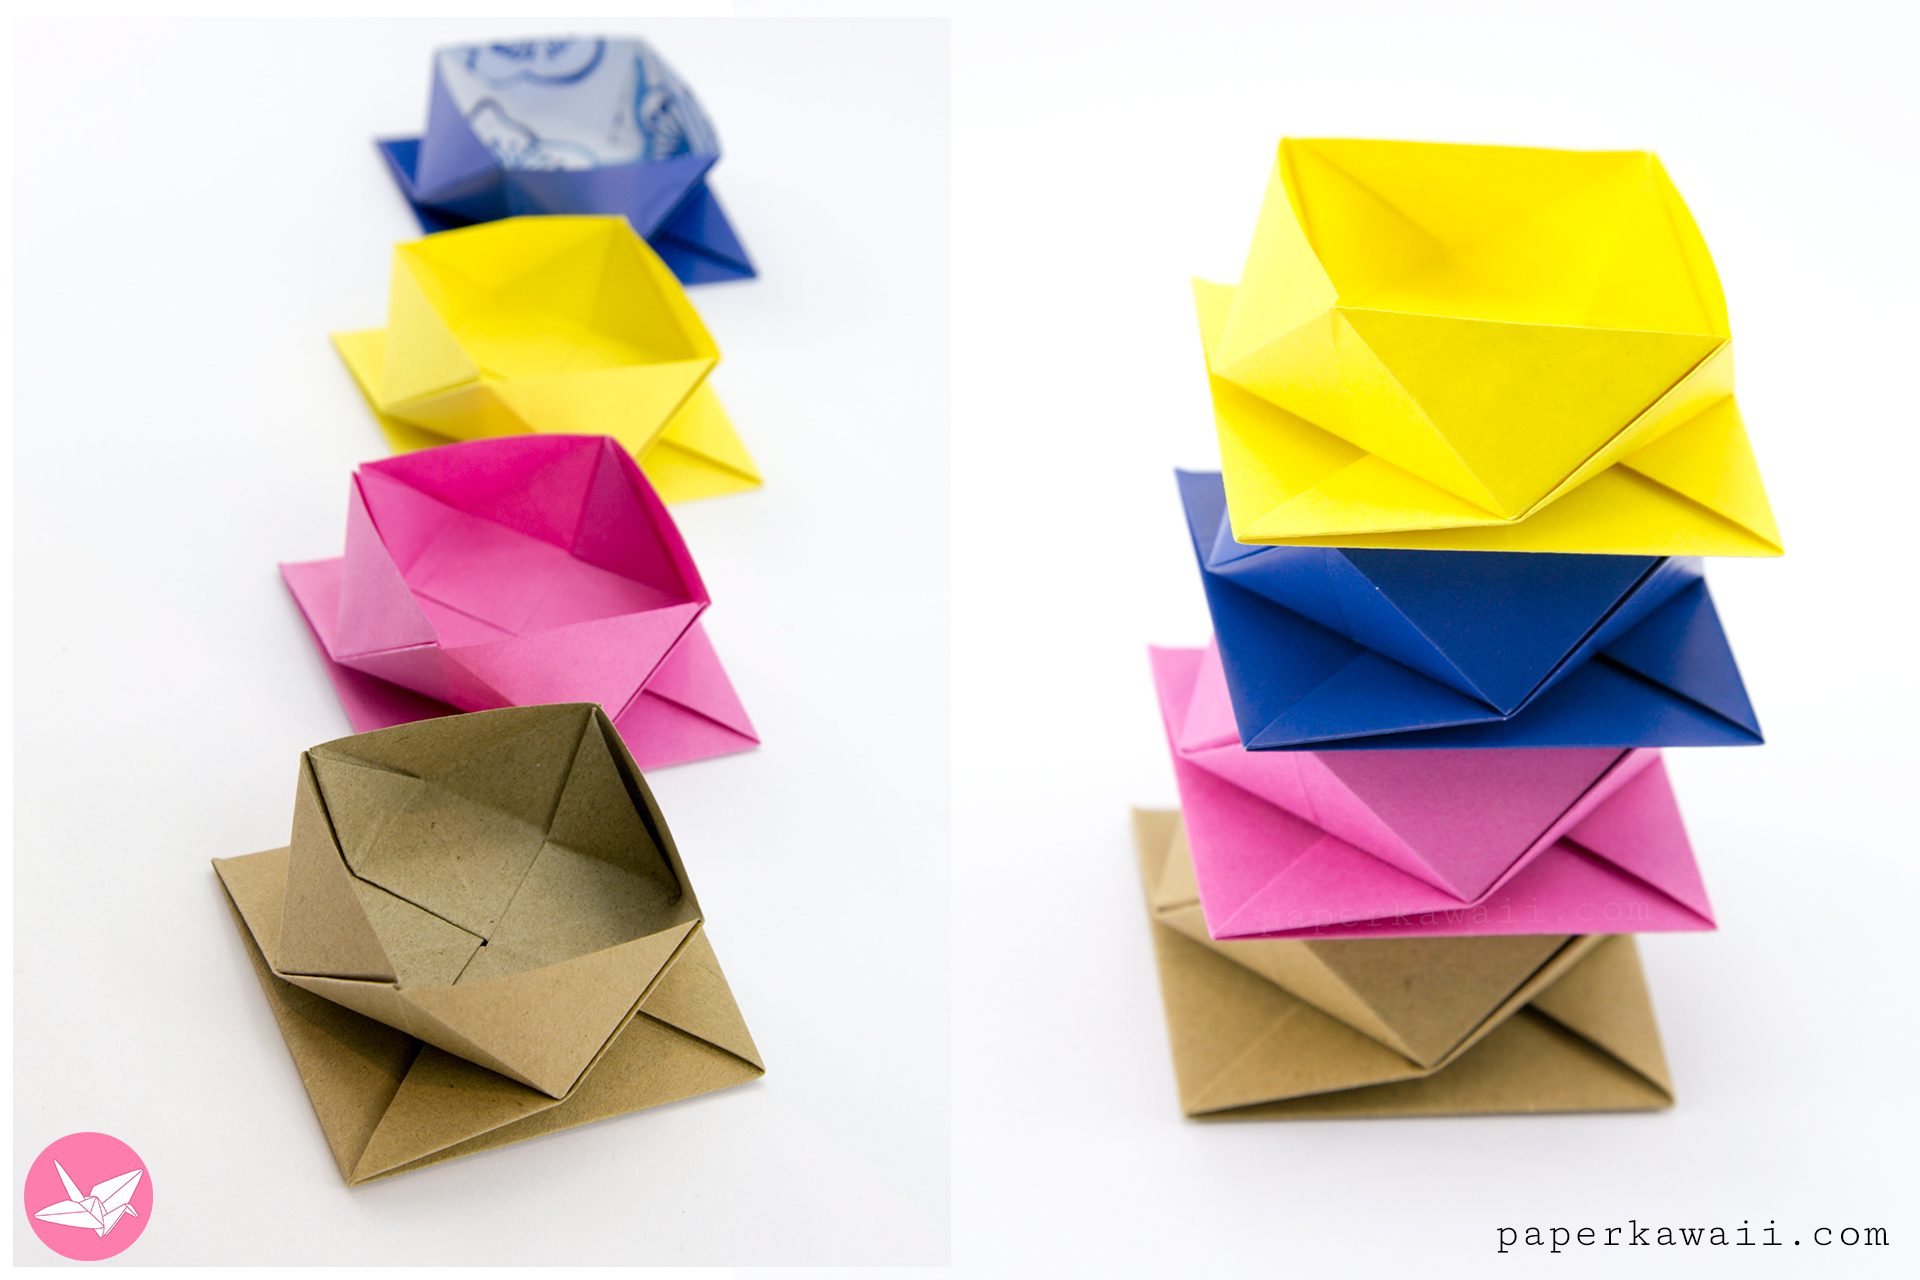 Origami Square Twist Box Paper Kawaii 03